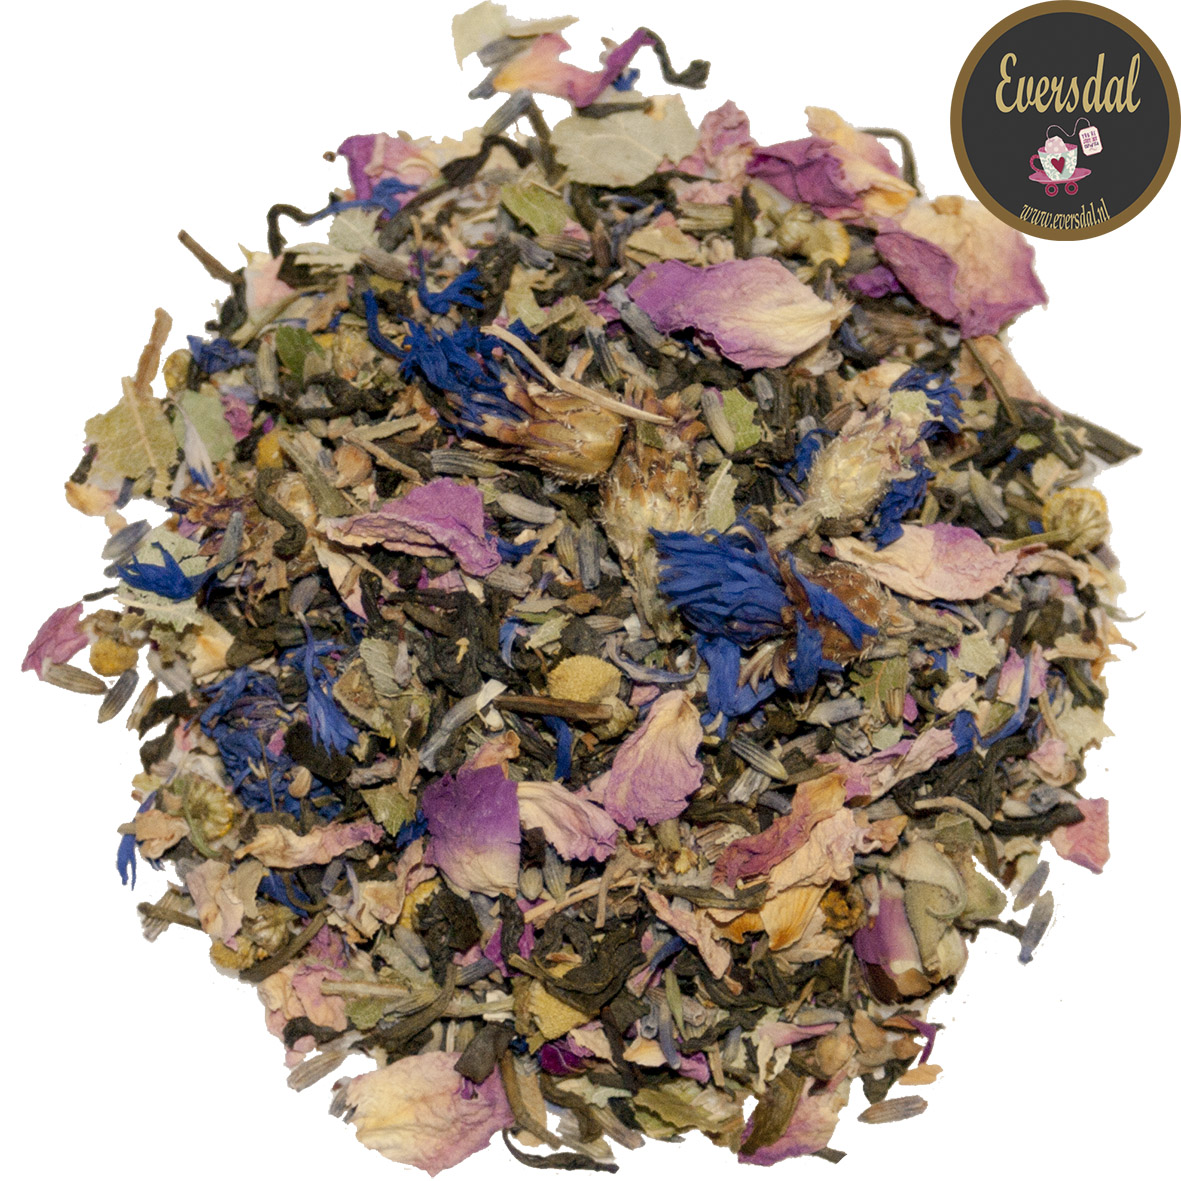 Bloementuintje - Floral Garden - groene thee met rozenblad, lavendel, lindebloesem